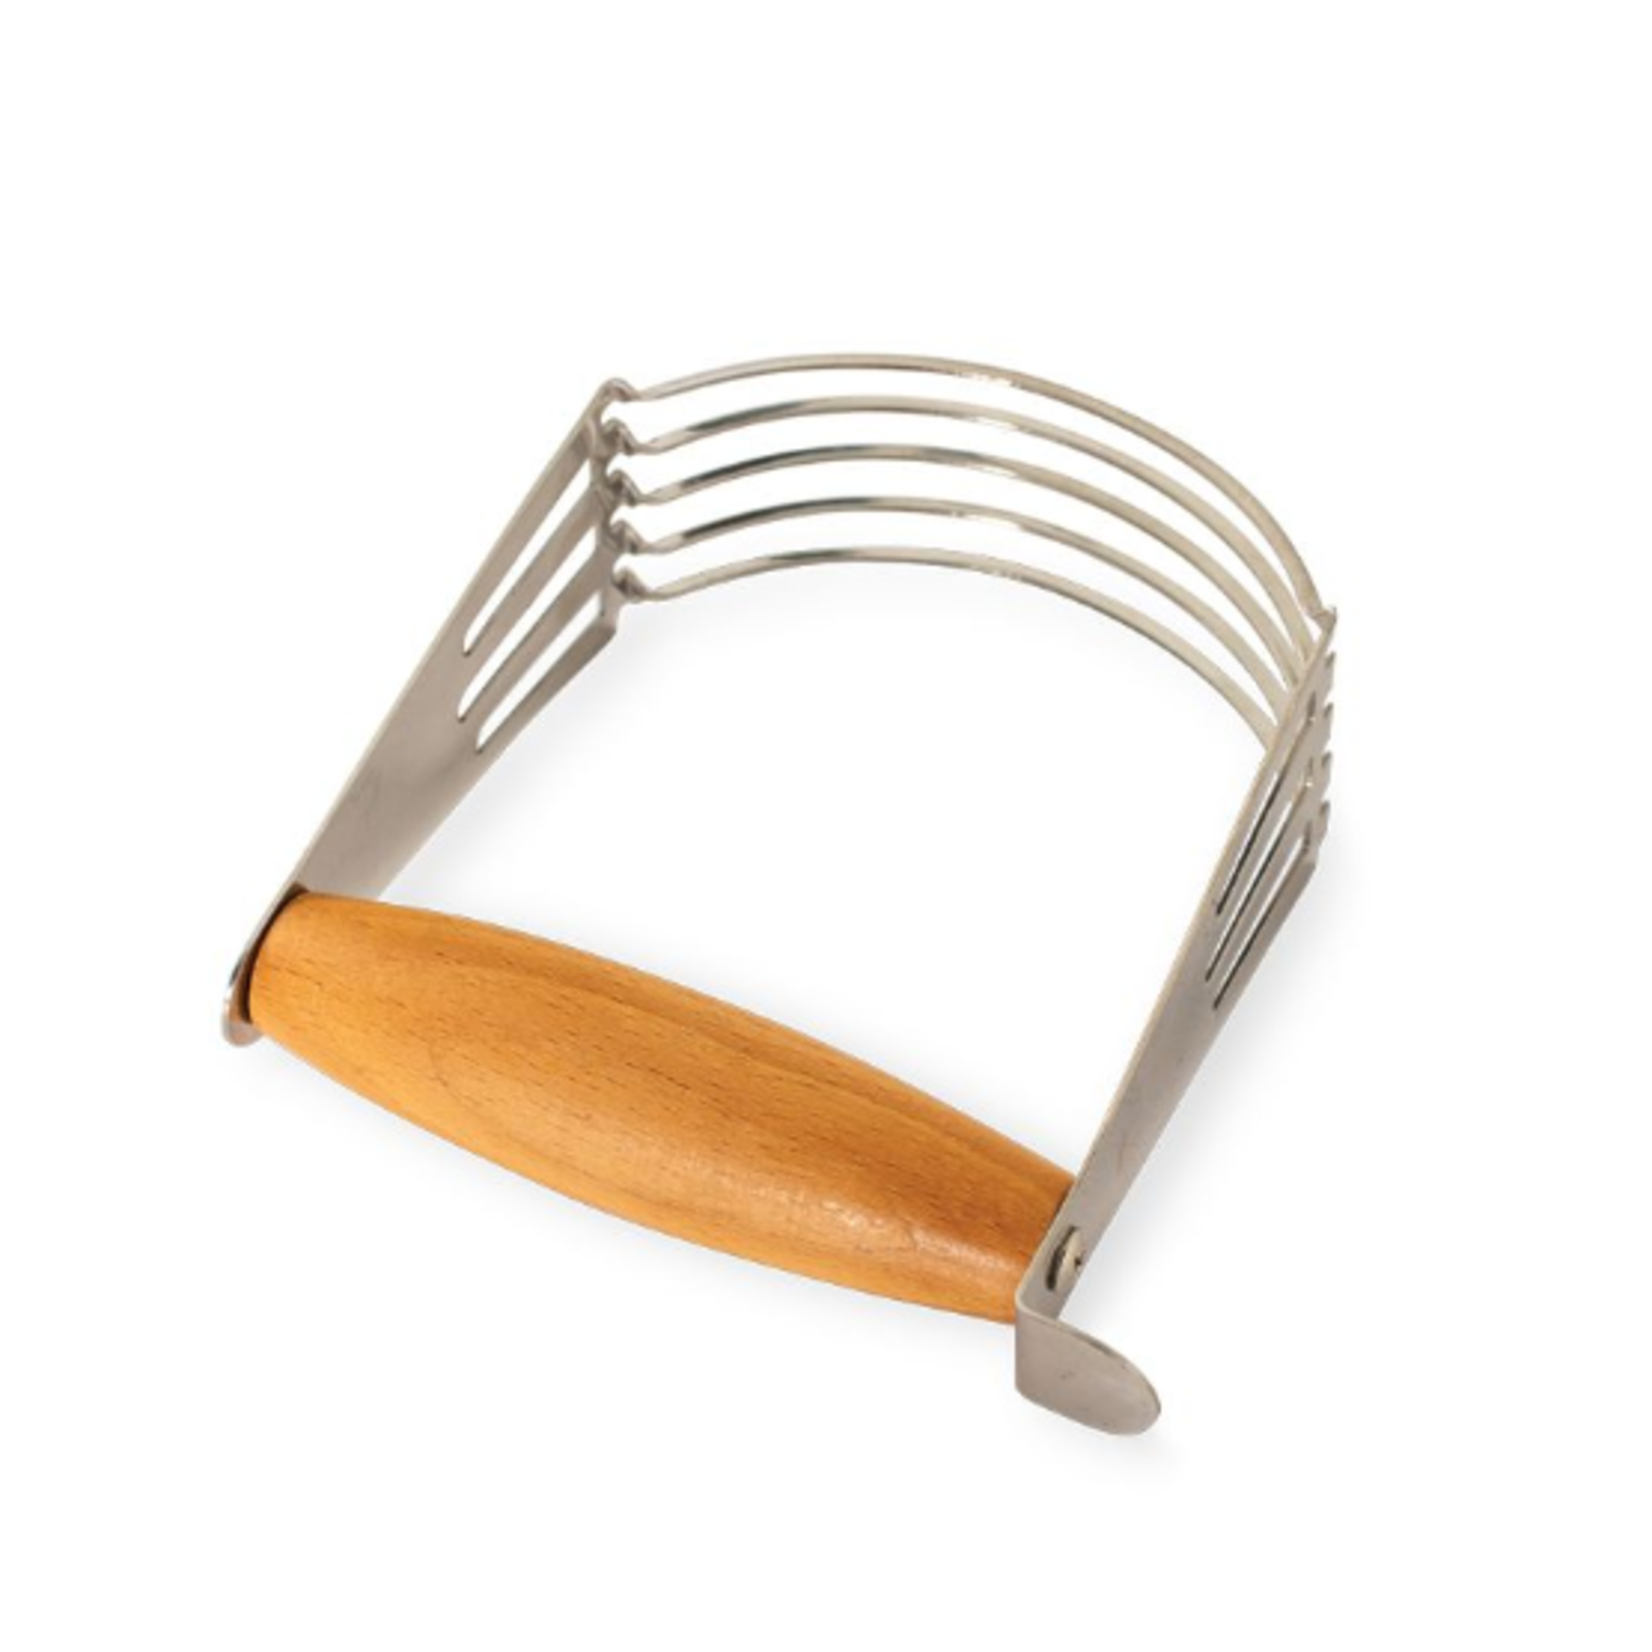 Nordicware Pastry Blender, wood handle